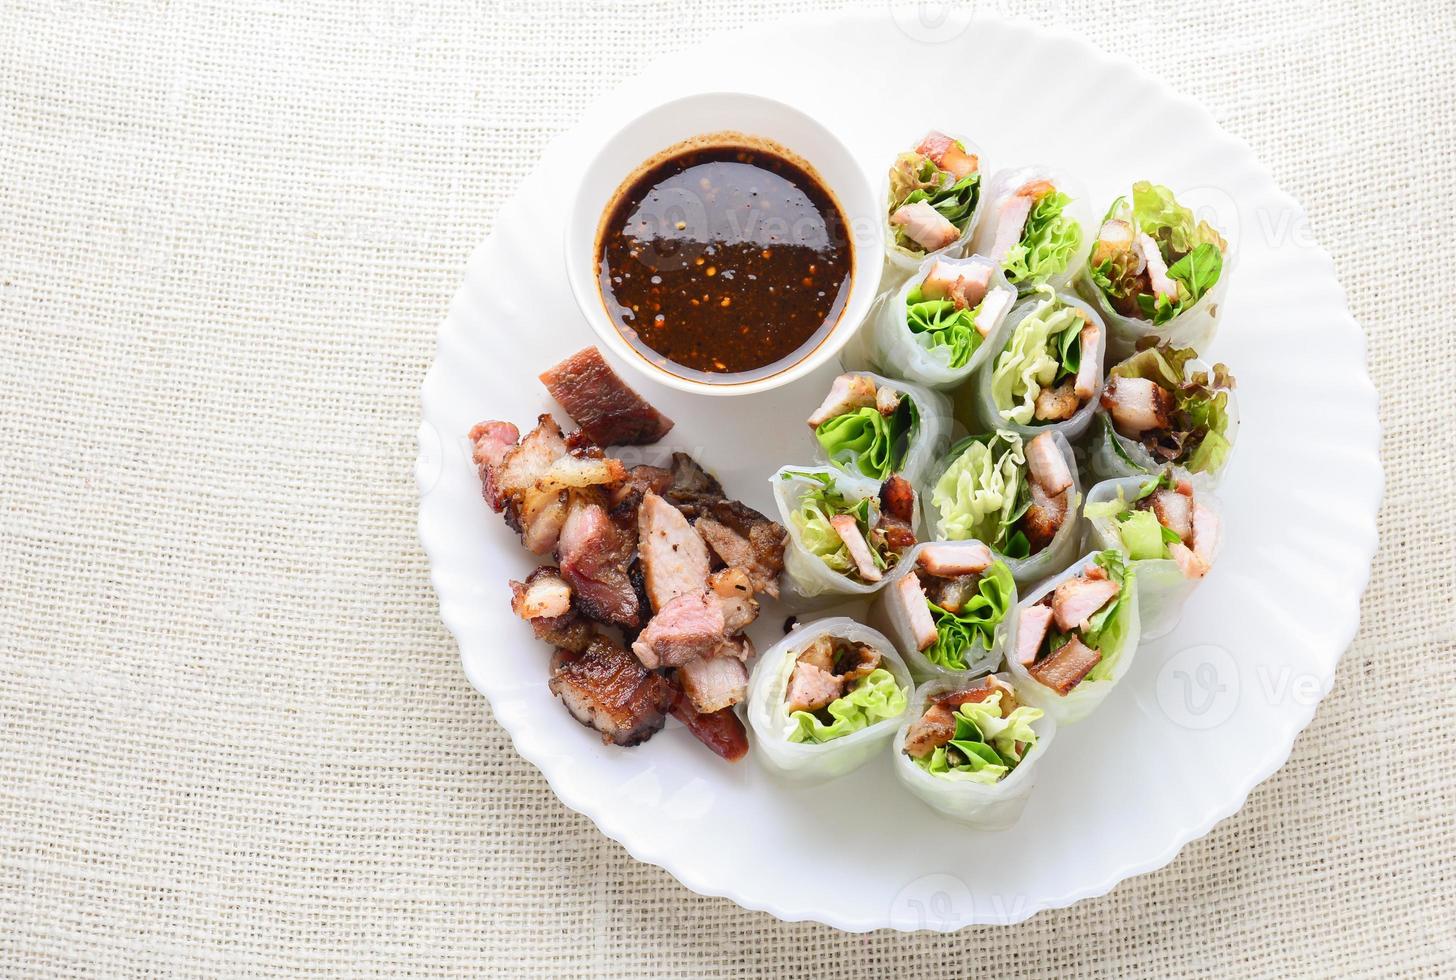 rolinhos primavera asiáticos variados frescos com carne de porco grelhada, vegetais frescos. prato saudável e delicioso foto